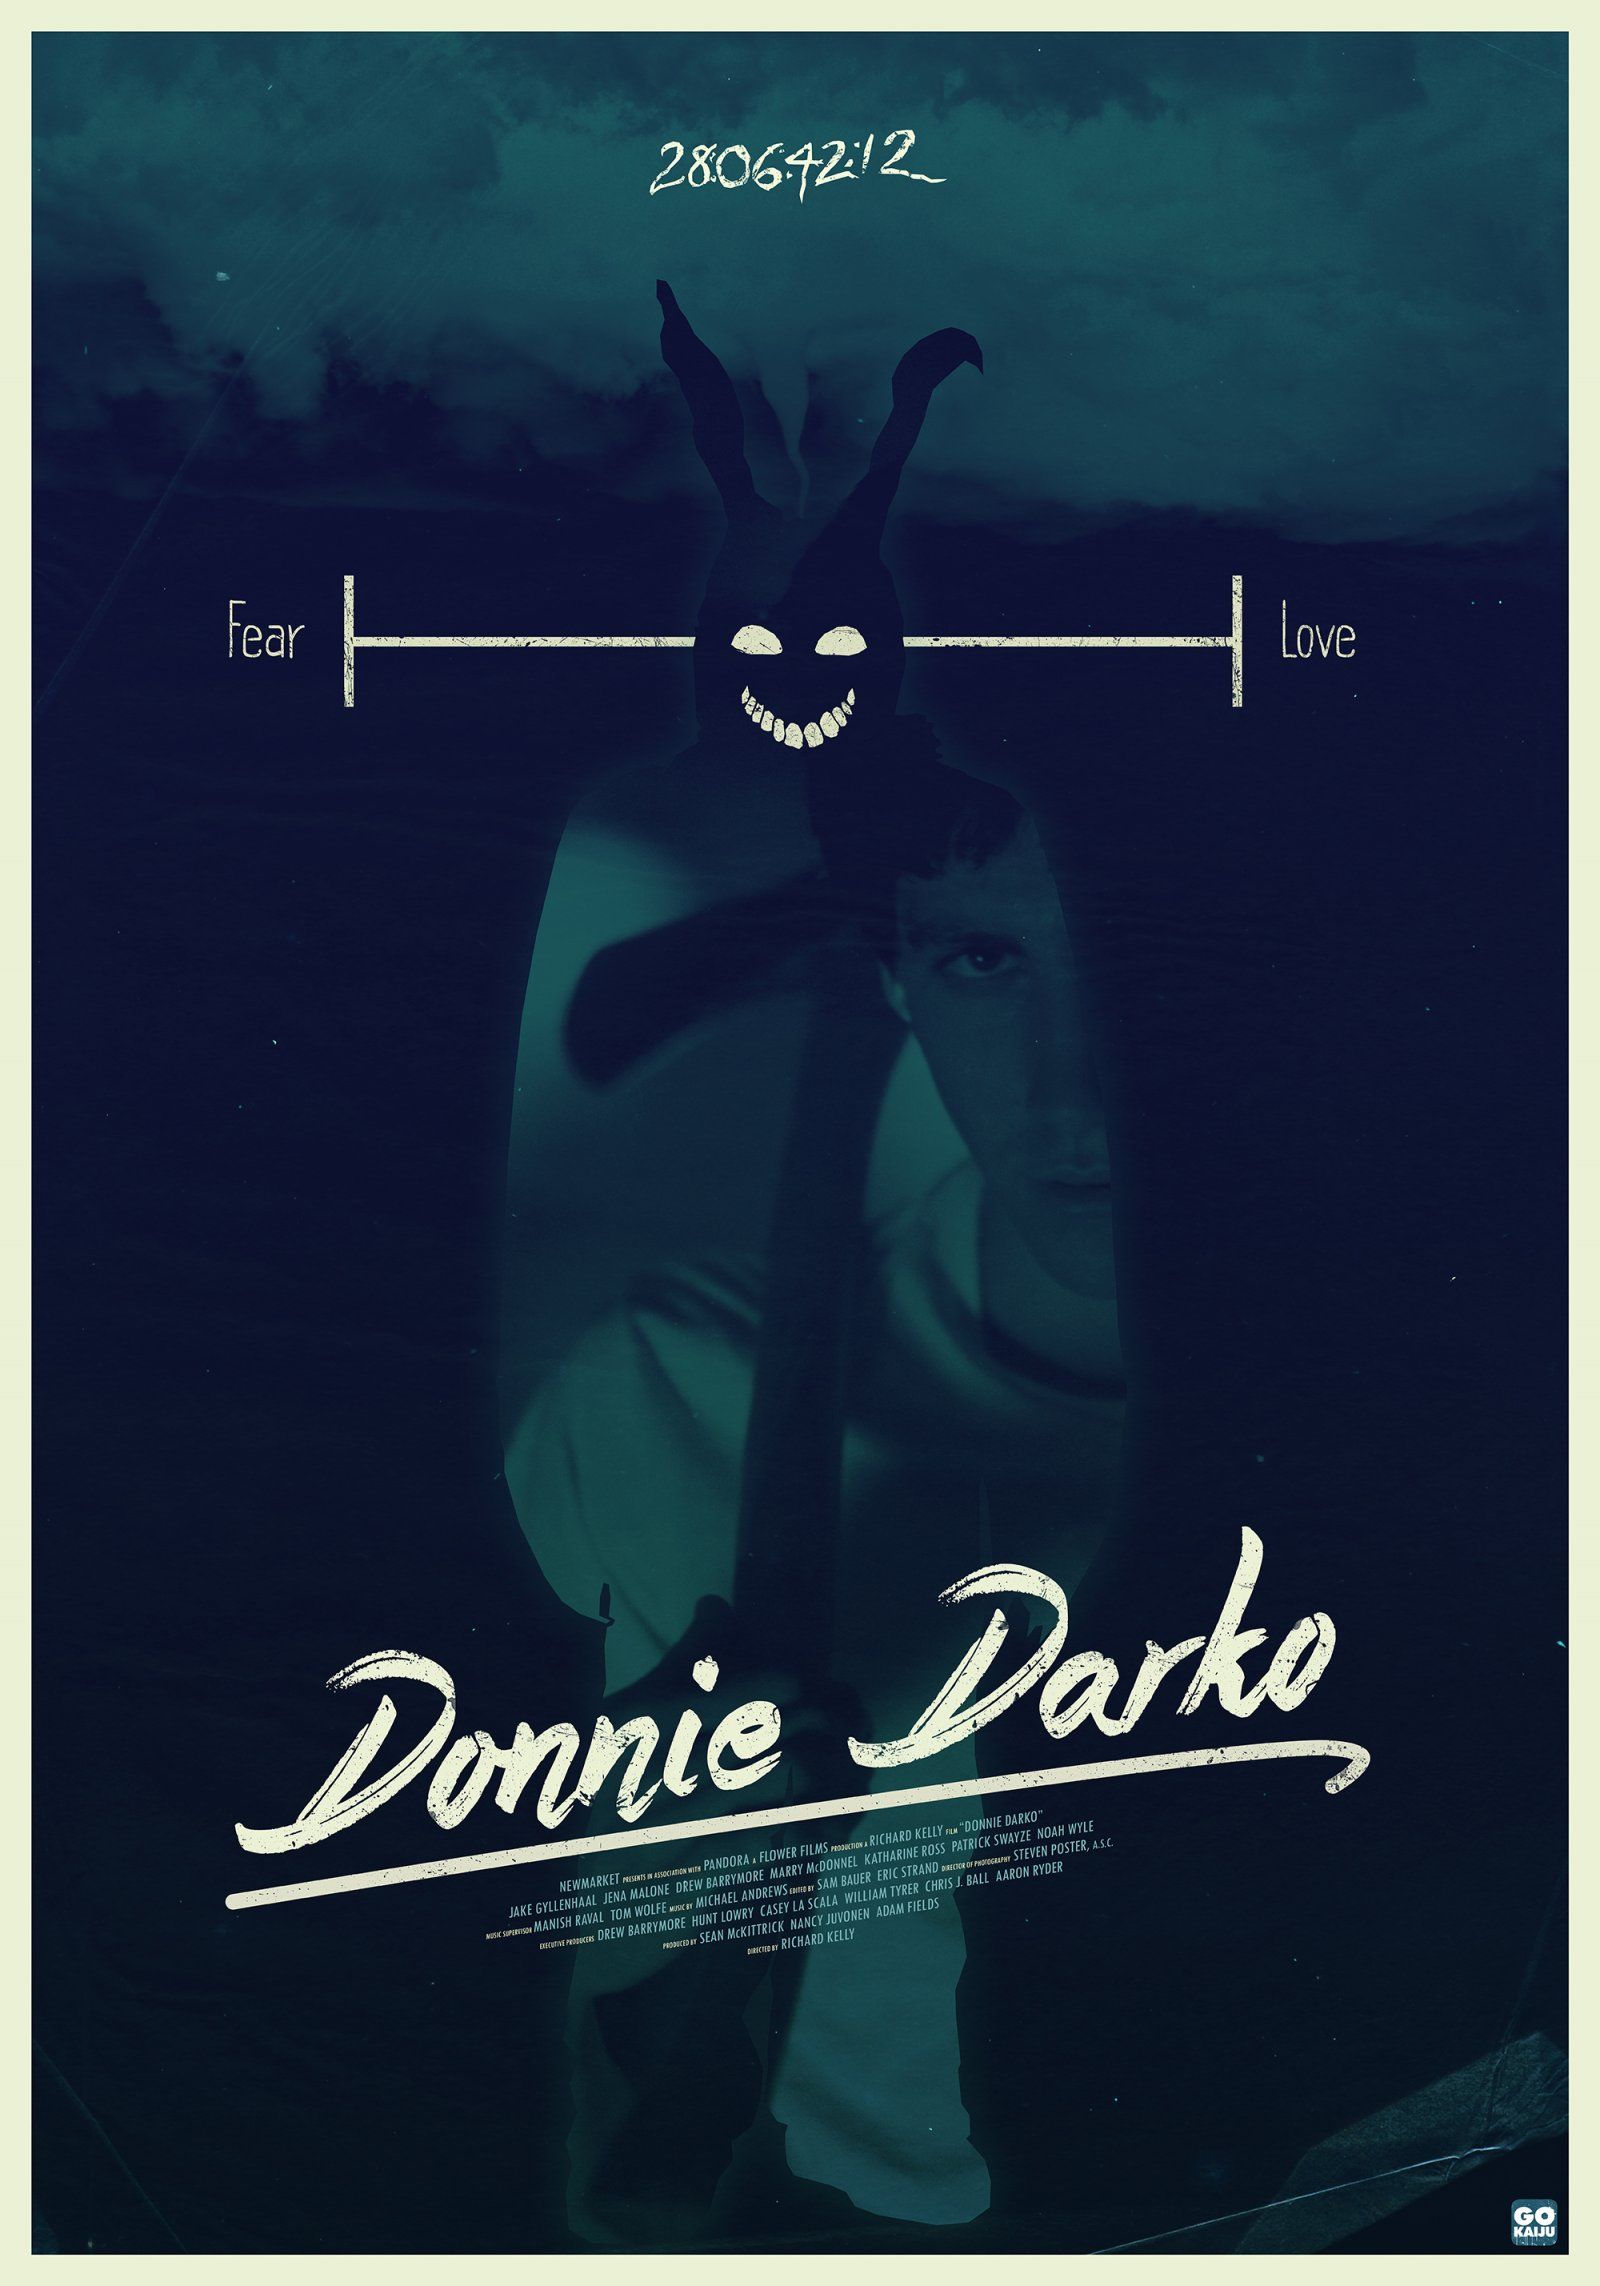 Donnie Darko Wallpaper Free Donnie Darko Background